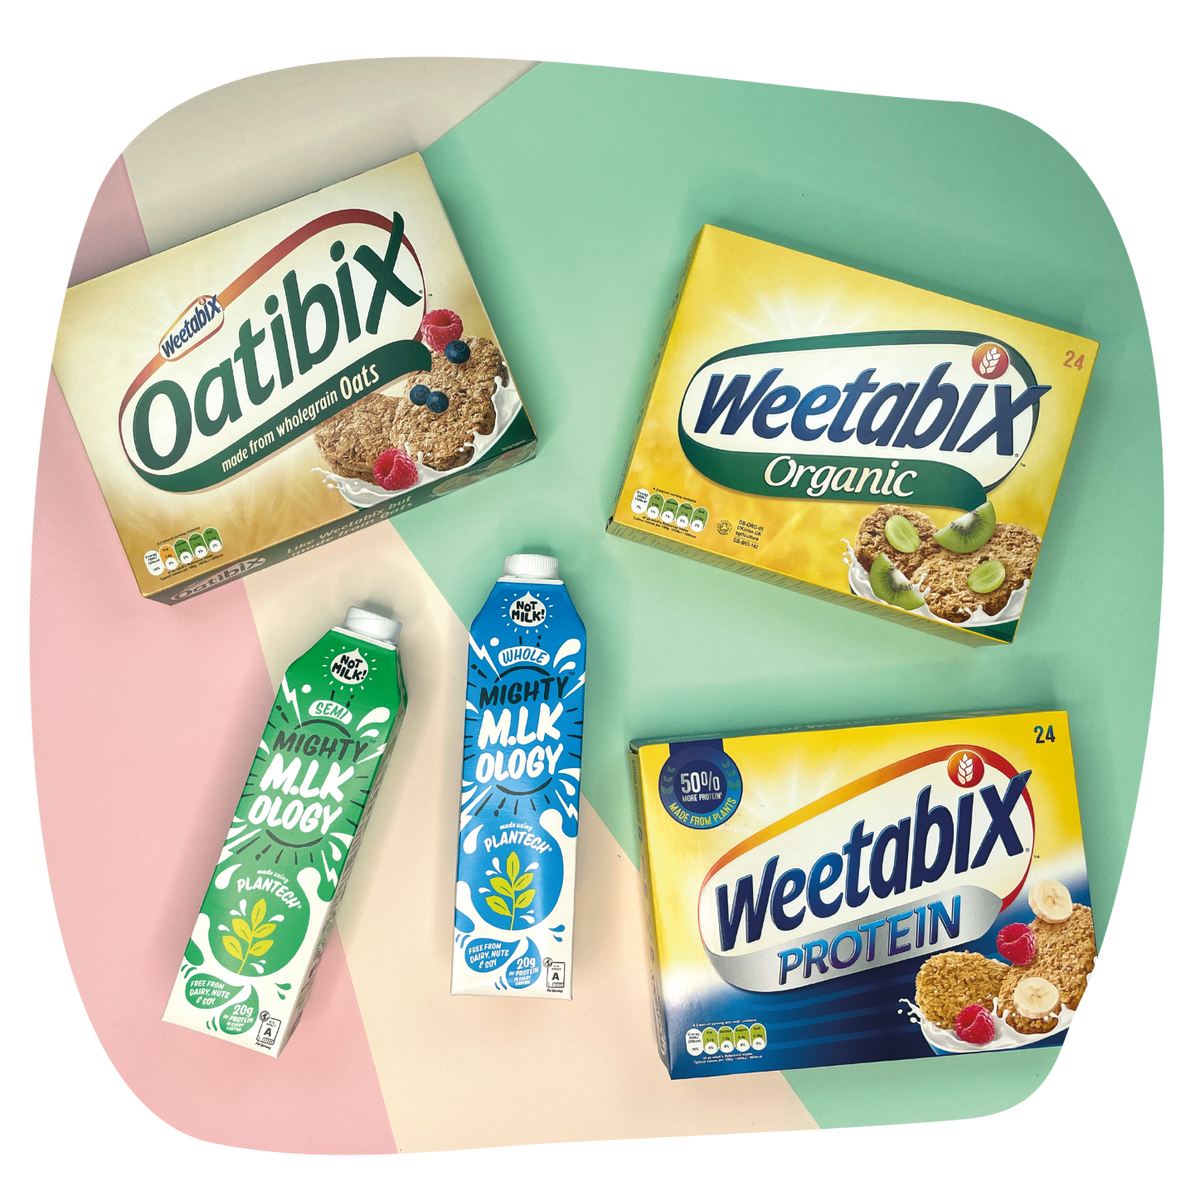 Weetabix taster pack